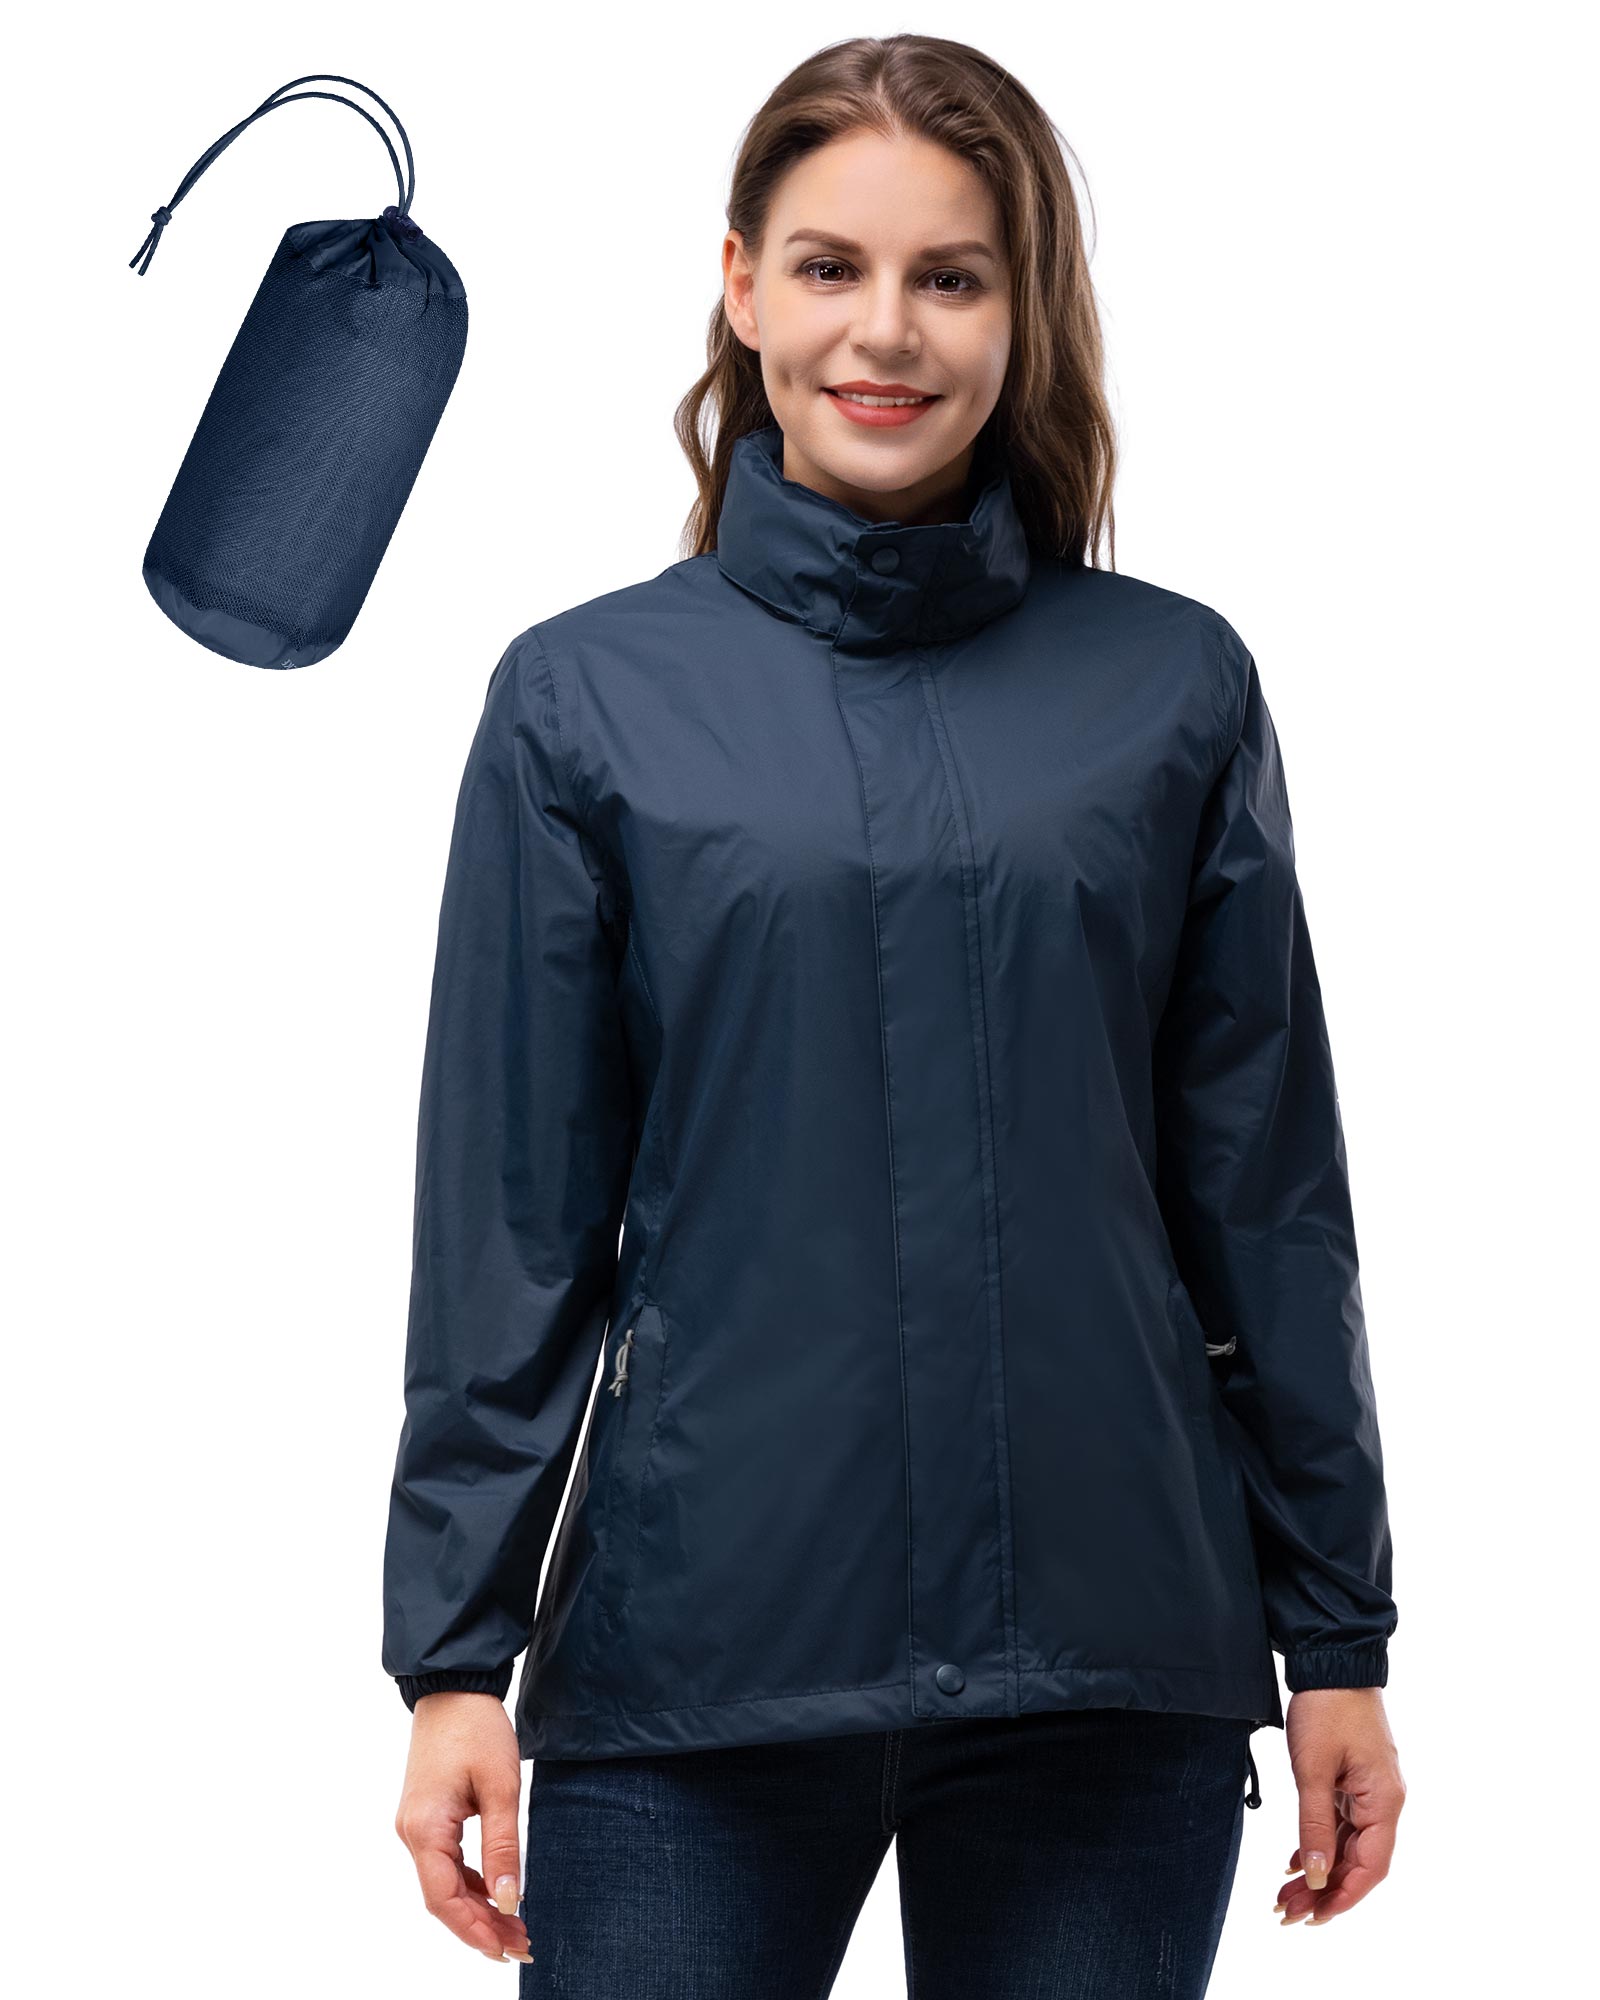 33,000ft Packable Rain Jacket Women Lightweight Waterproof Raincoat with  Hood Cycling Bike Jacket Windbreaker